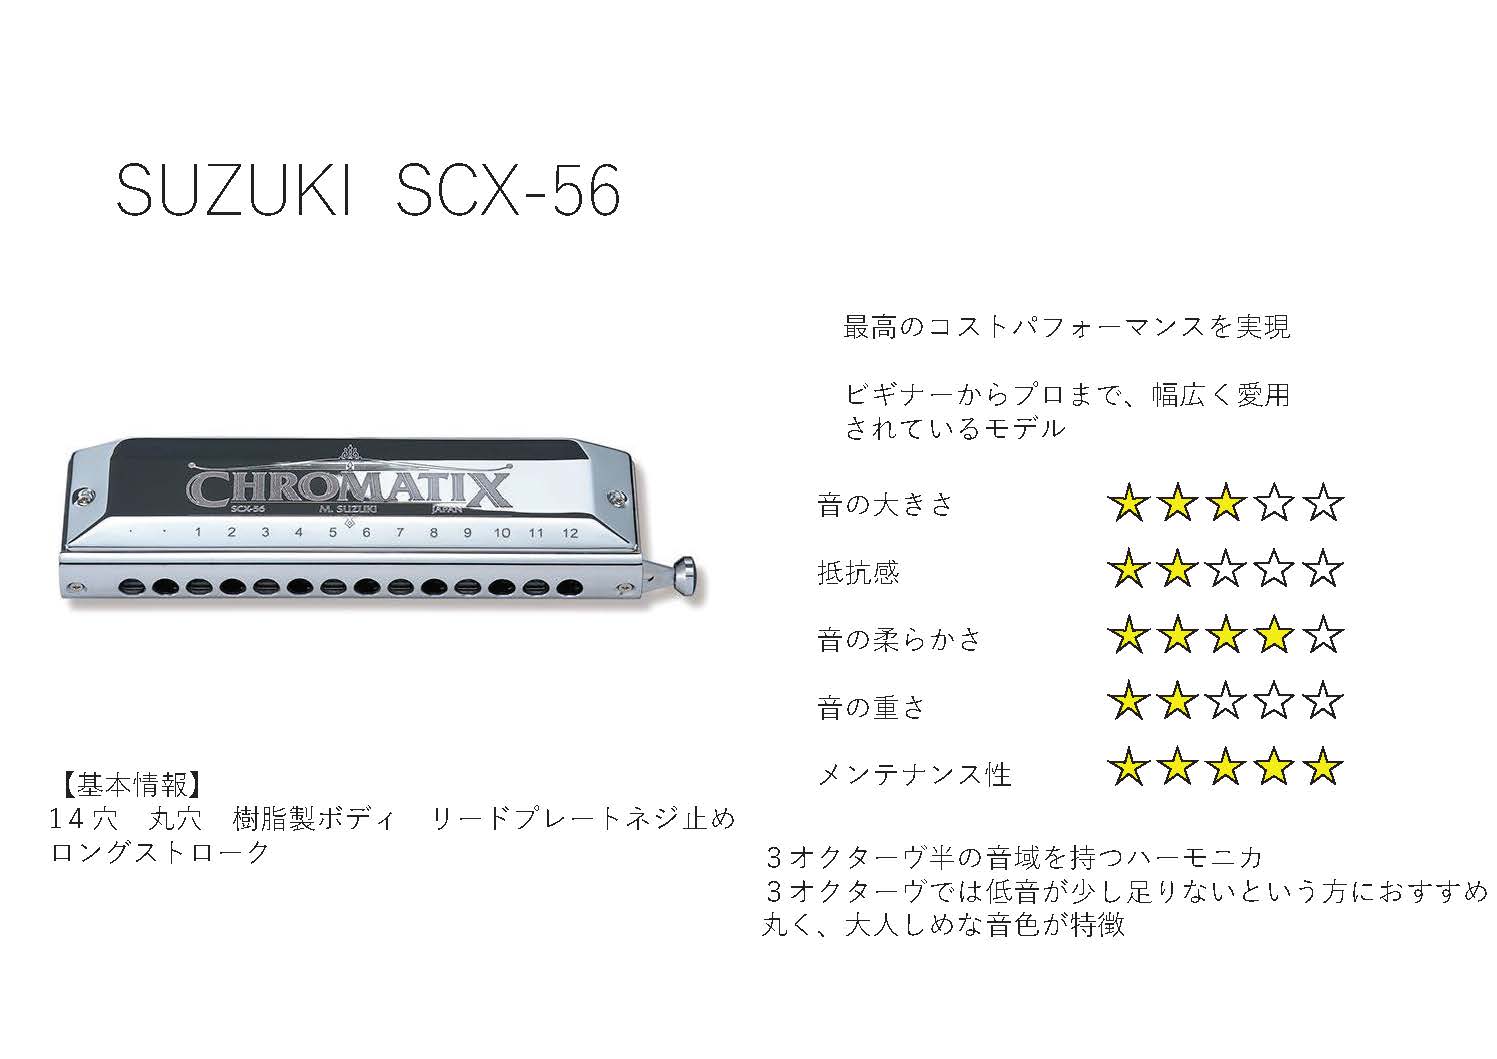 SUZUKI SCX-56 V2 【クロマチックハーモニカ】 / クロマチック 